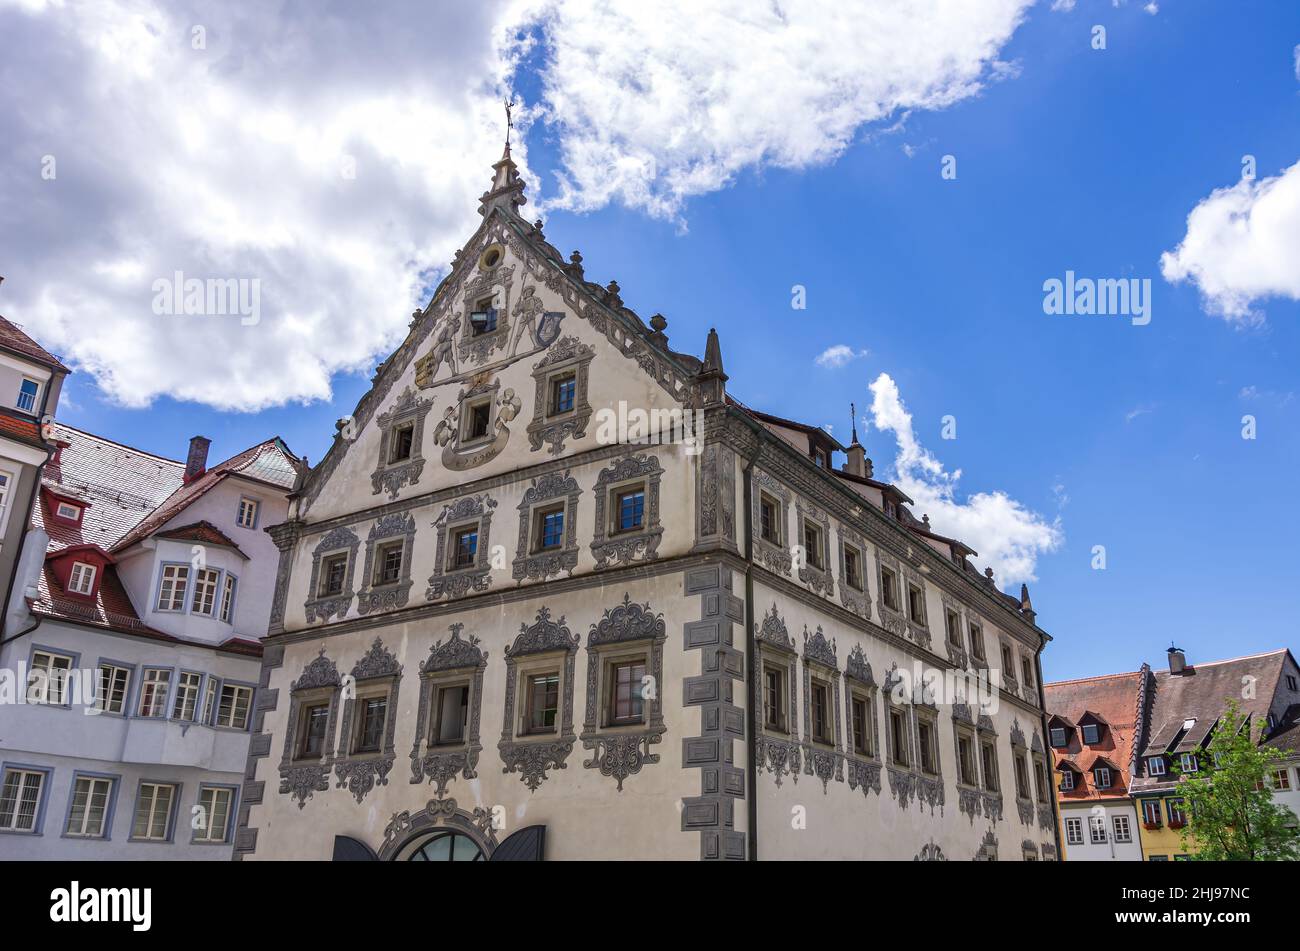 Ce que l'on appelle Lederhaus, construit vers 1400, richement décoré avec des peintures murales de la Renaissance, Ravensburg, Bade-Wurtemberg, Allemagne. Banque D'Images